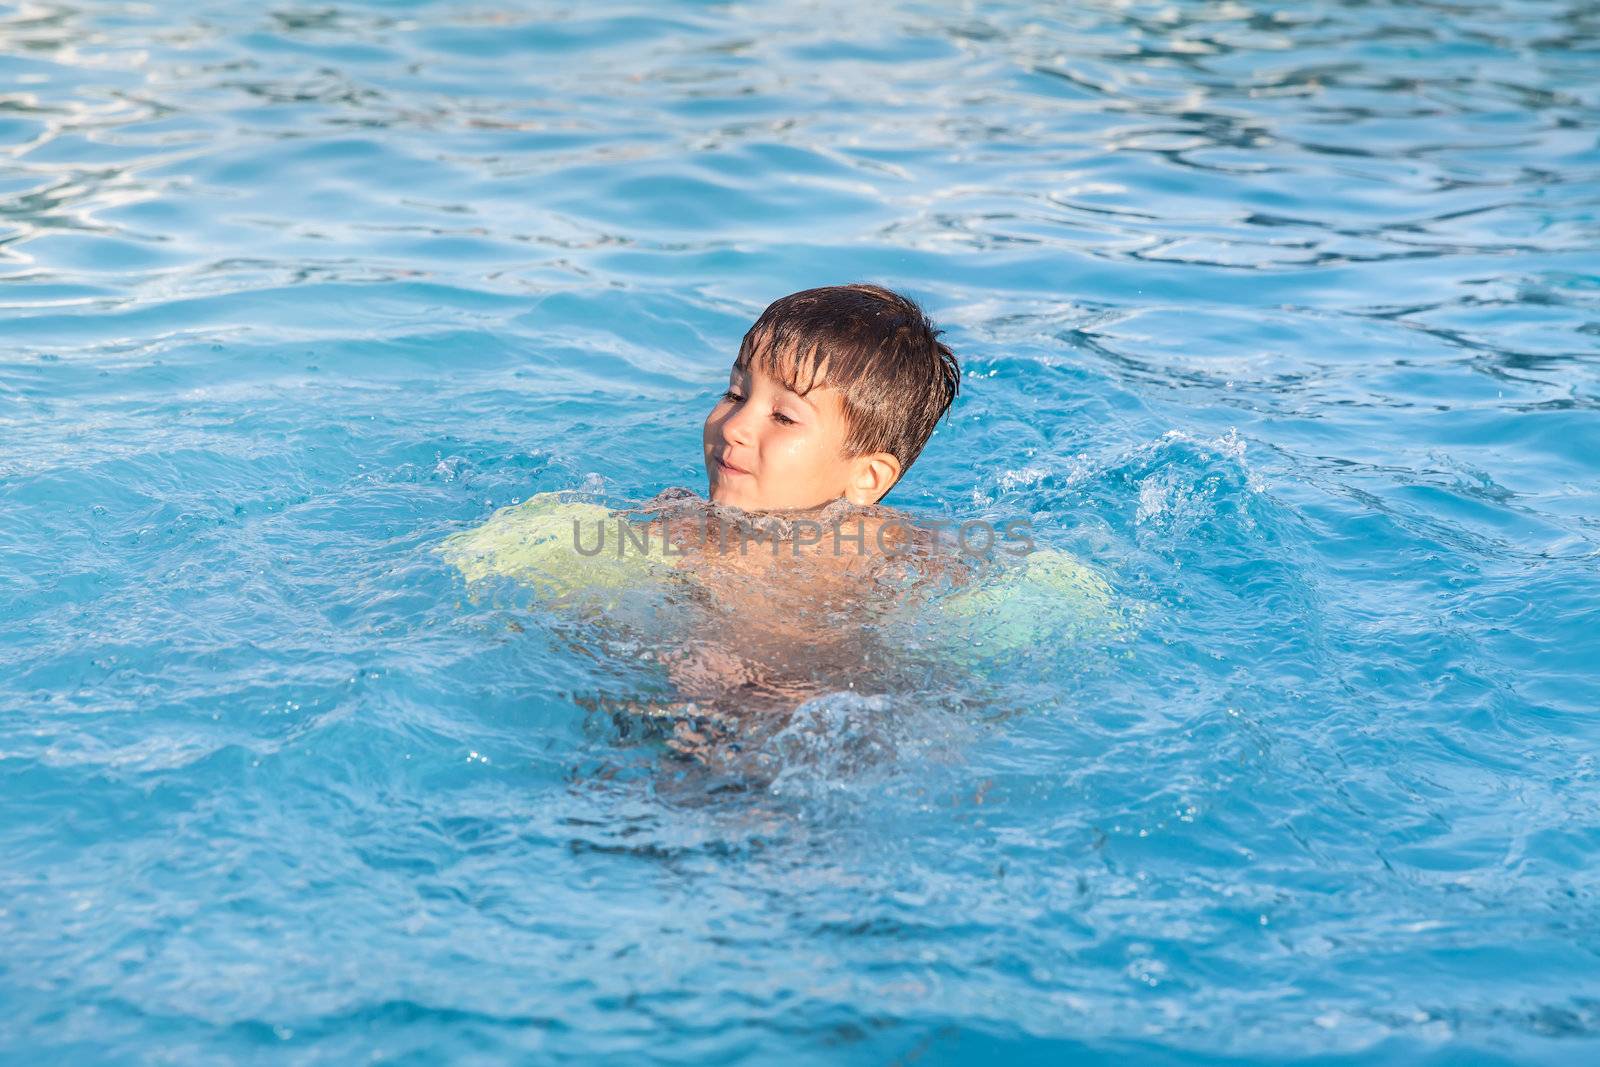 Little boy learning to swim in the pool  by palinchak